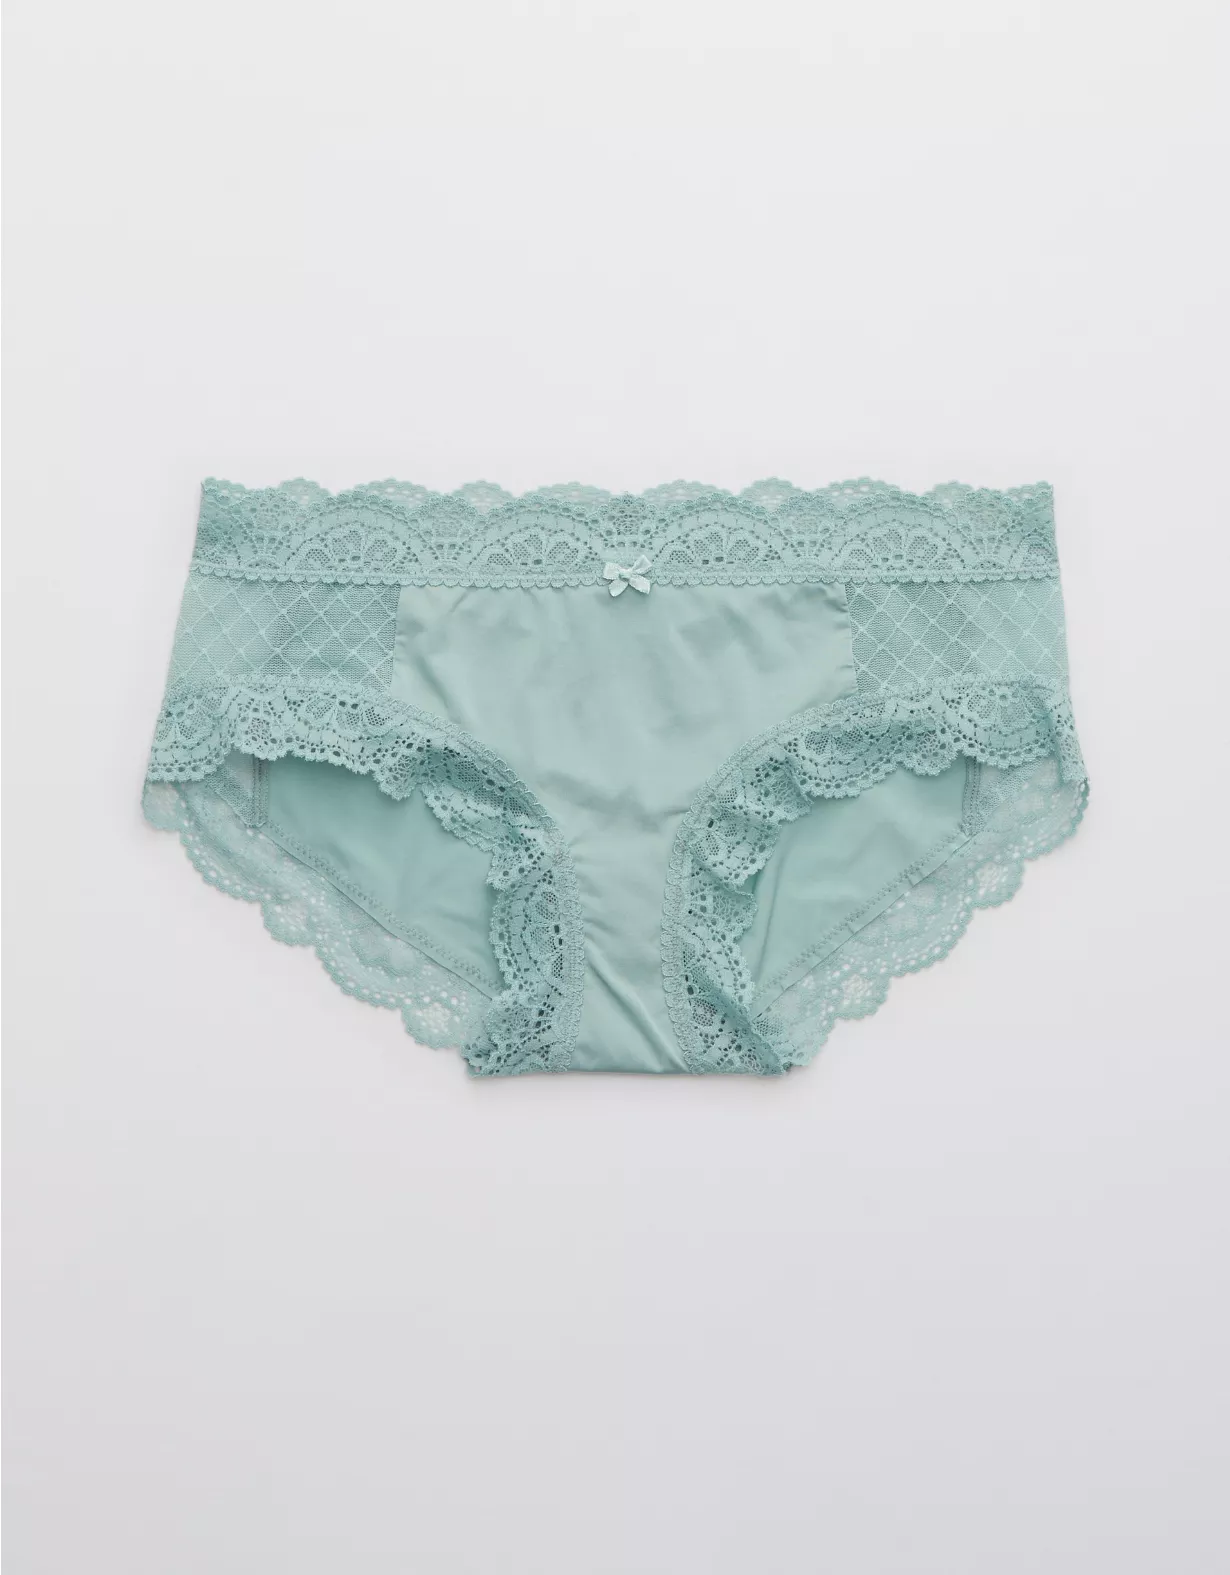 Aerie Slumber Party Lace Shine Boybrief Underwear